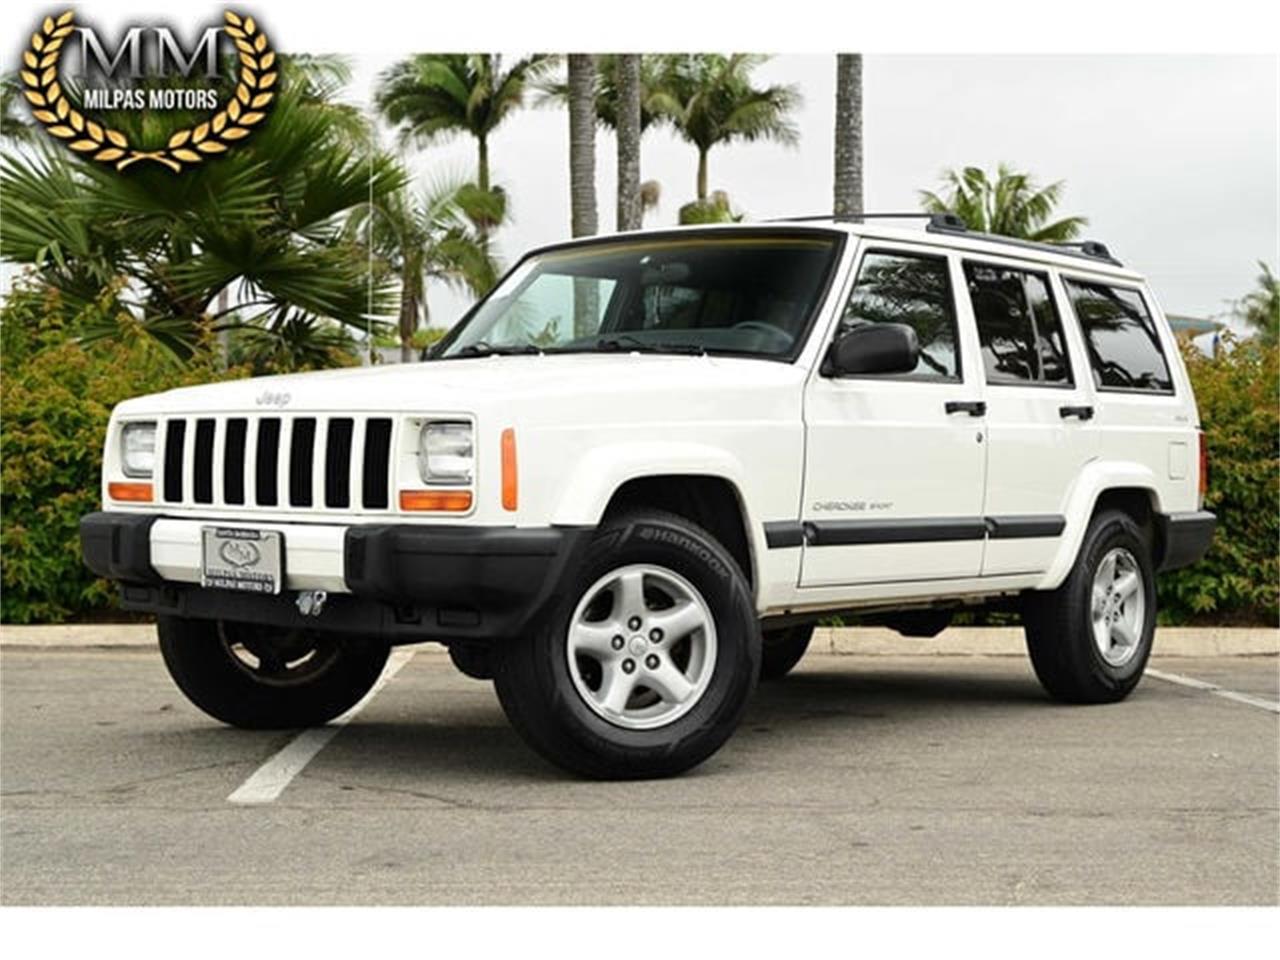 For Sale: 2001 Jeep Cherokee in Santa Barbara, California for sale in Santa Barbara, CA